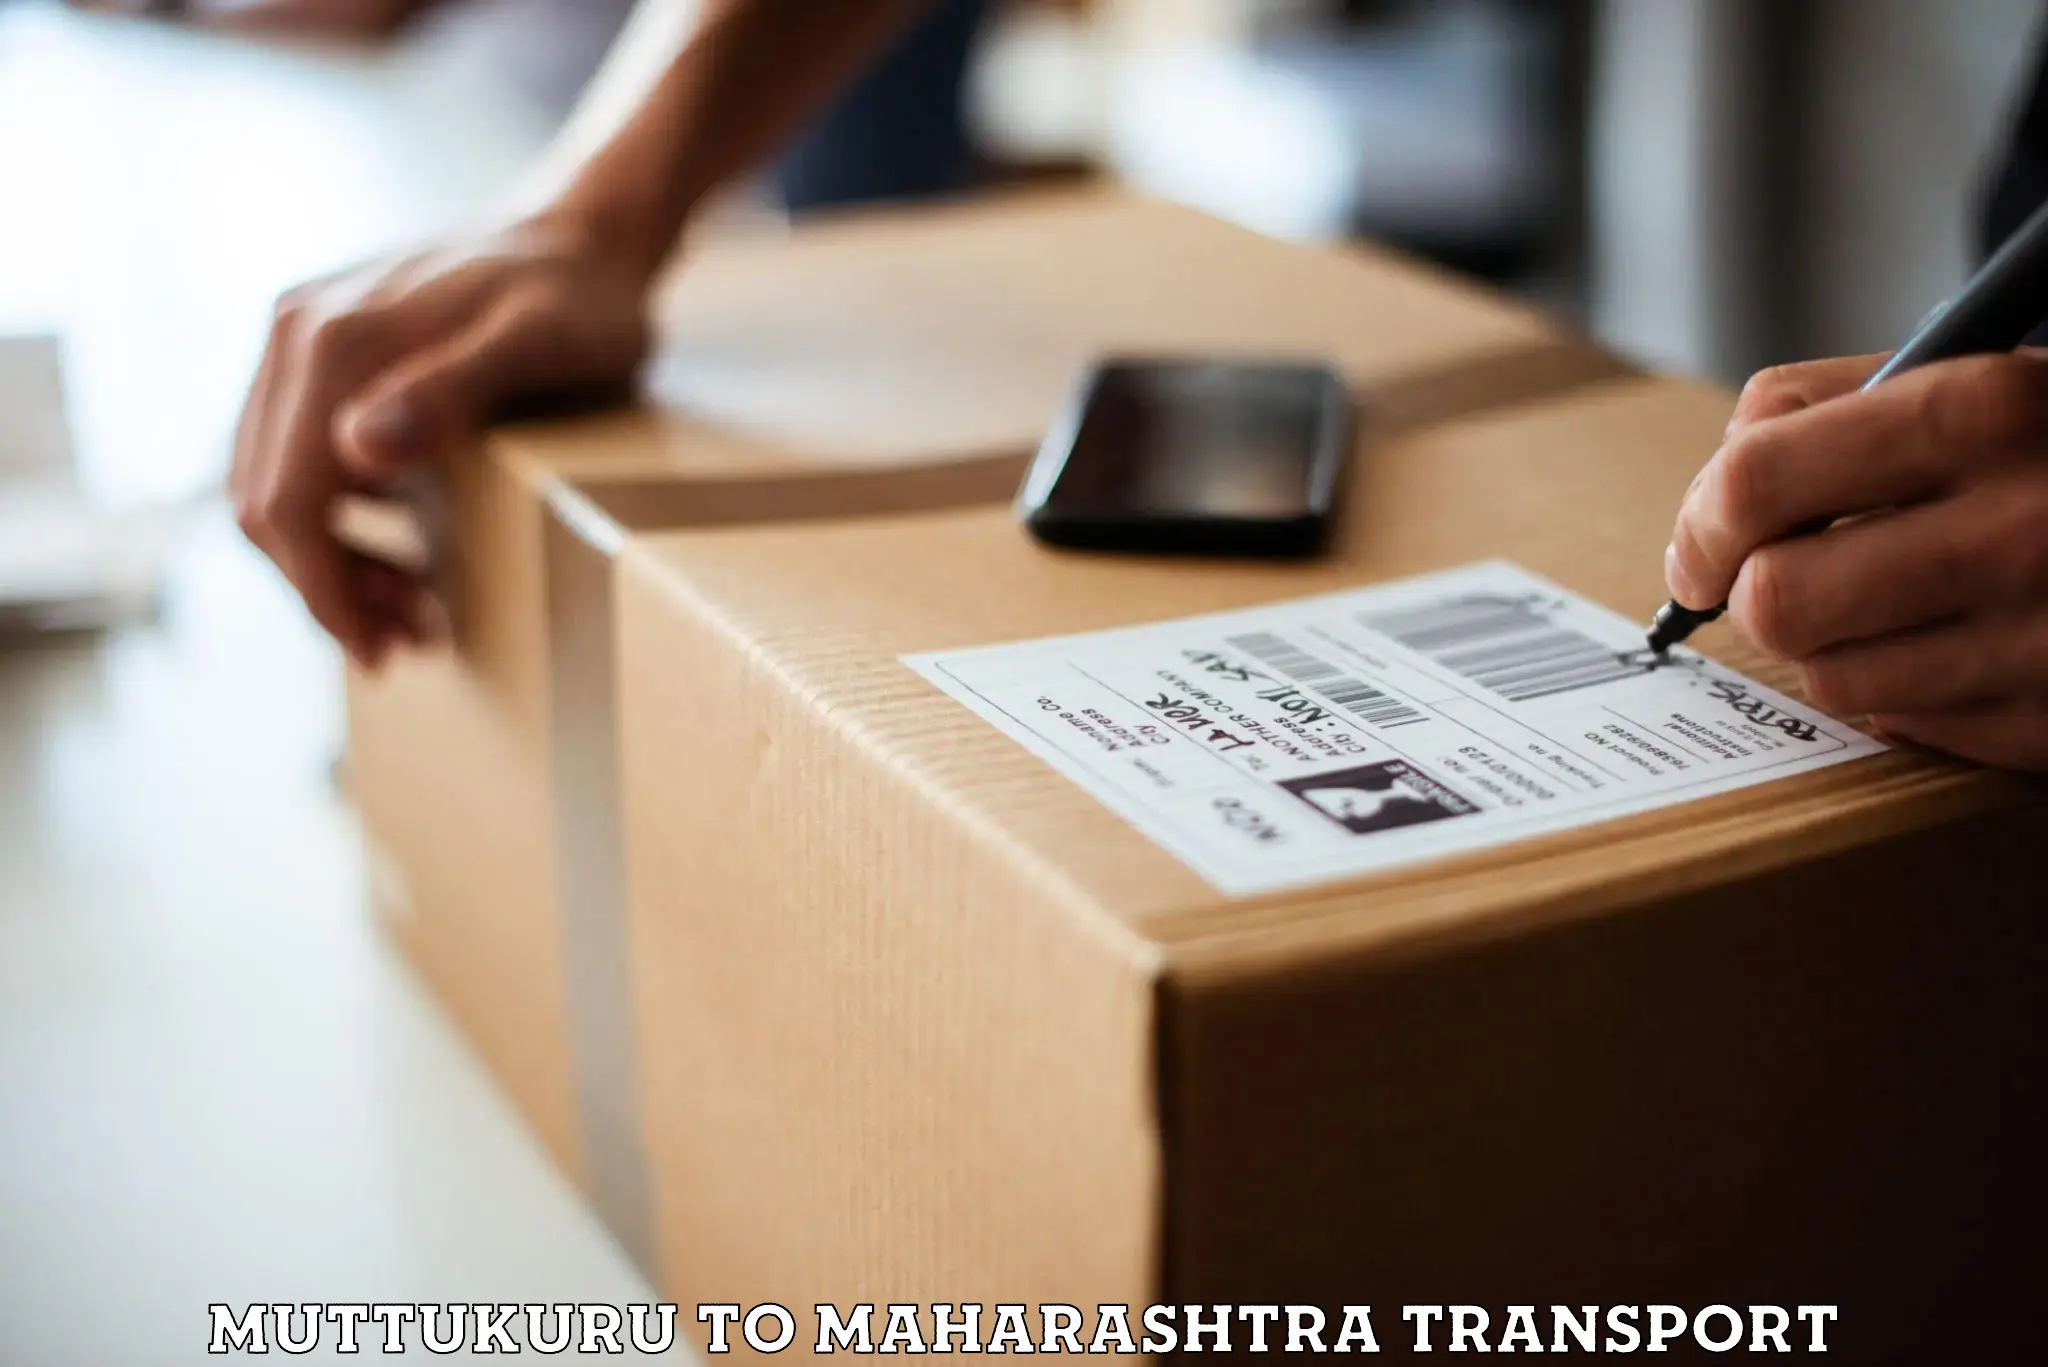 Furniture transport service Muttukuru to Junnar